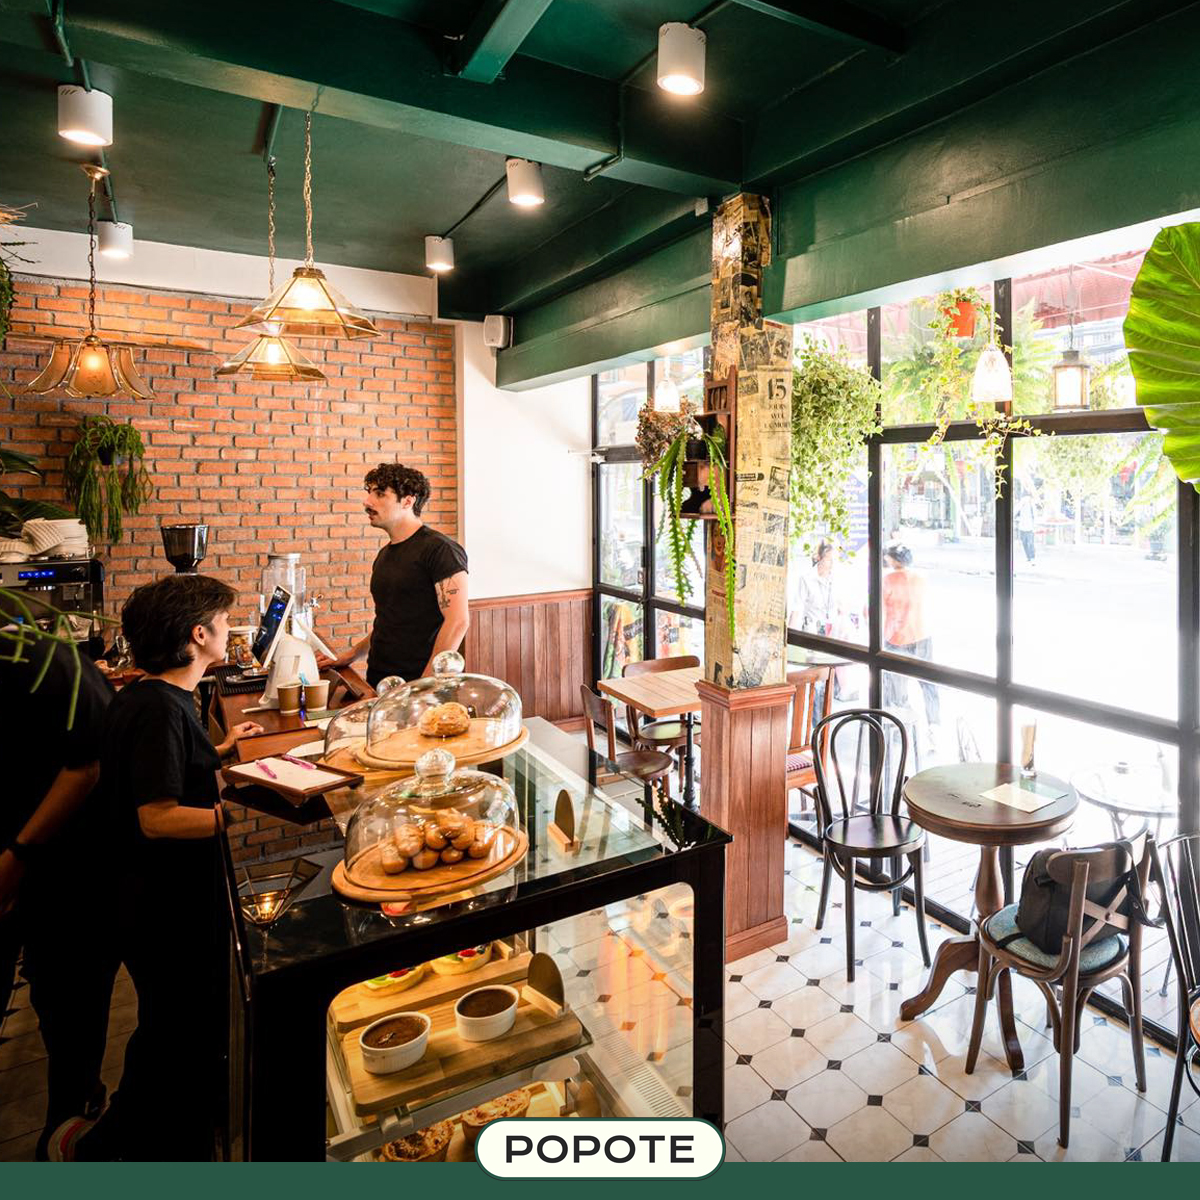 Popote French bistro & café (Popote French bistro & café) : กรุงเทพมหานคร (Bangkok)